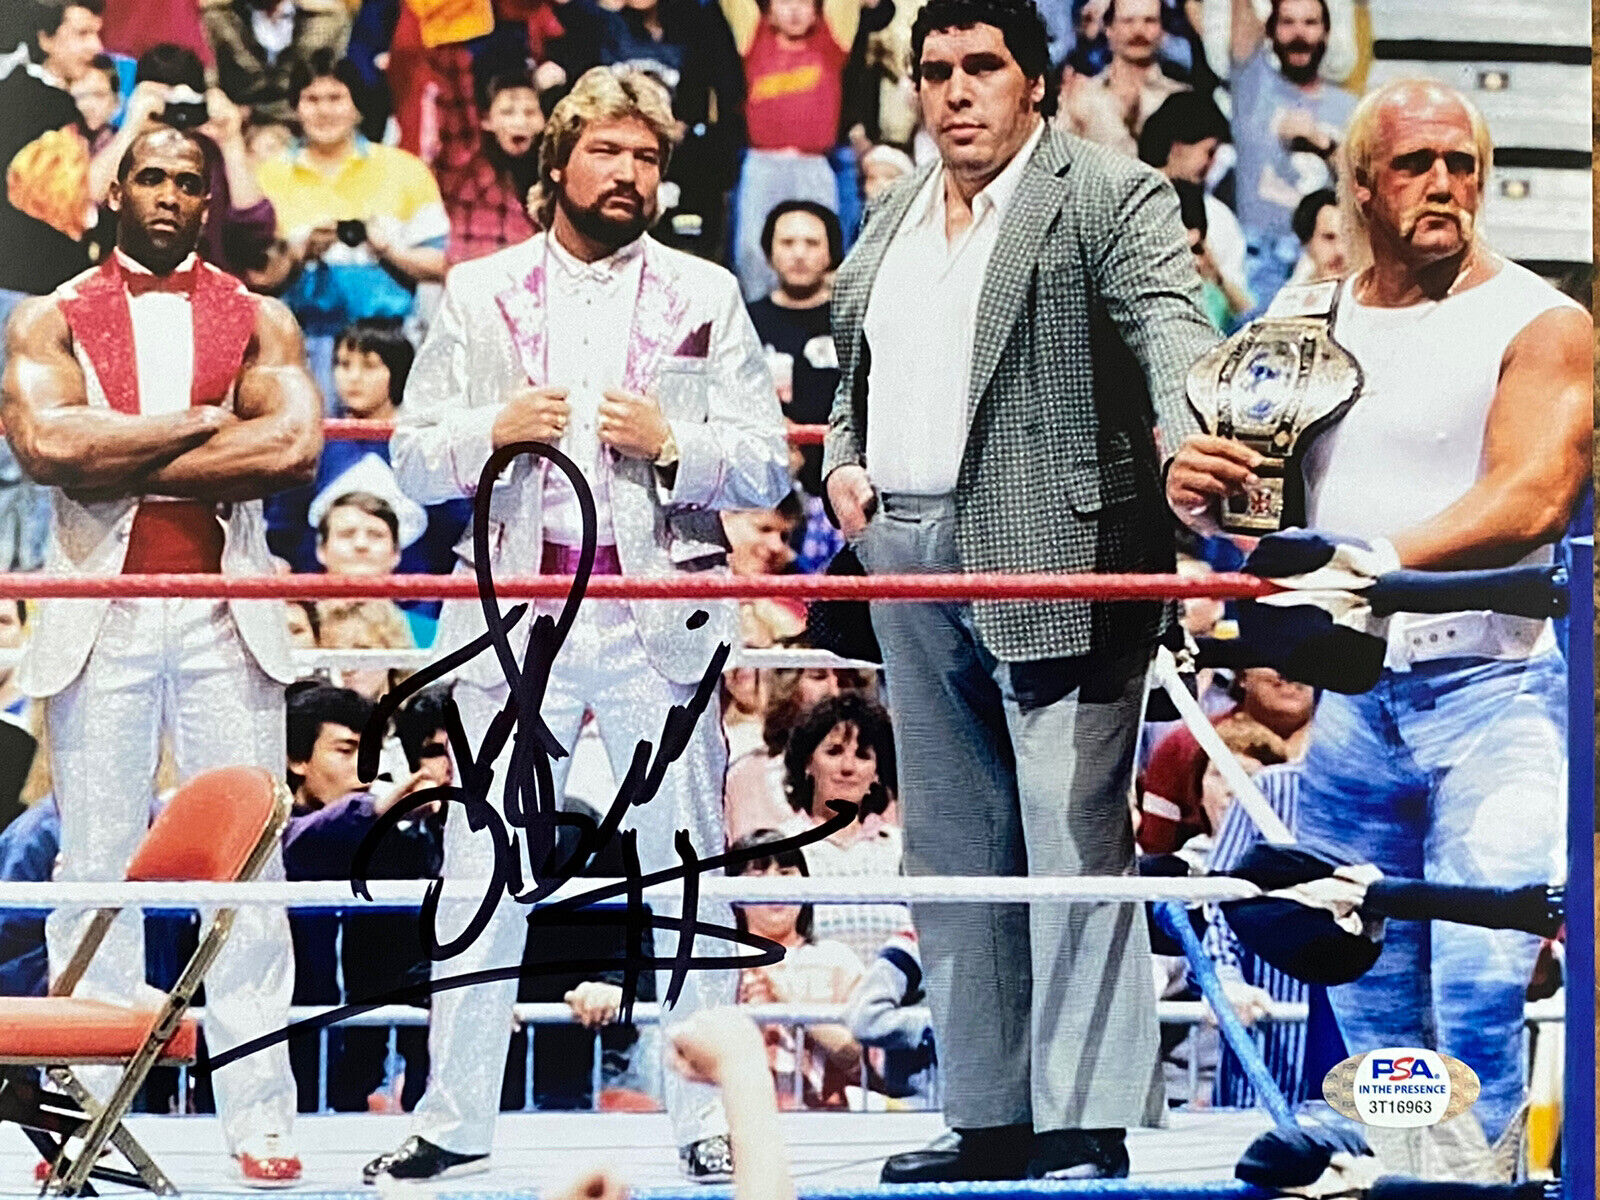 Ted DiBiase MILLION DOLLAR MAN Signed WWE WWF Wrestling 8x10 Photo Poster painting PSA - COA